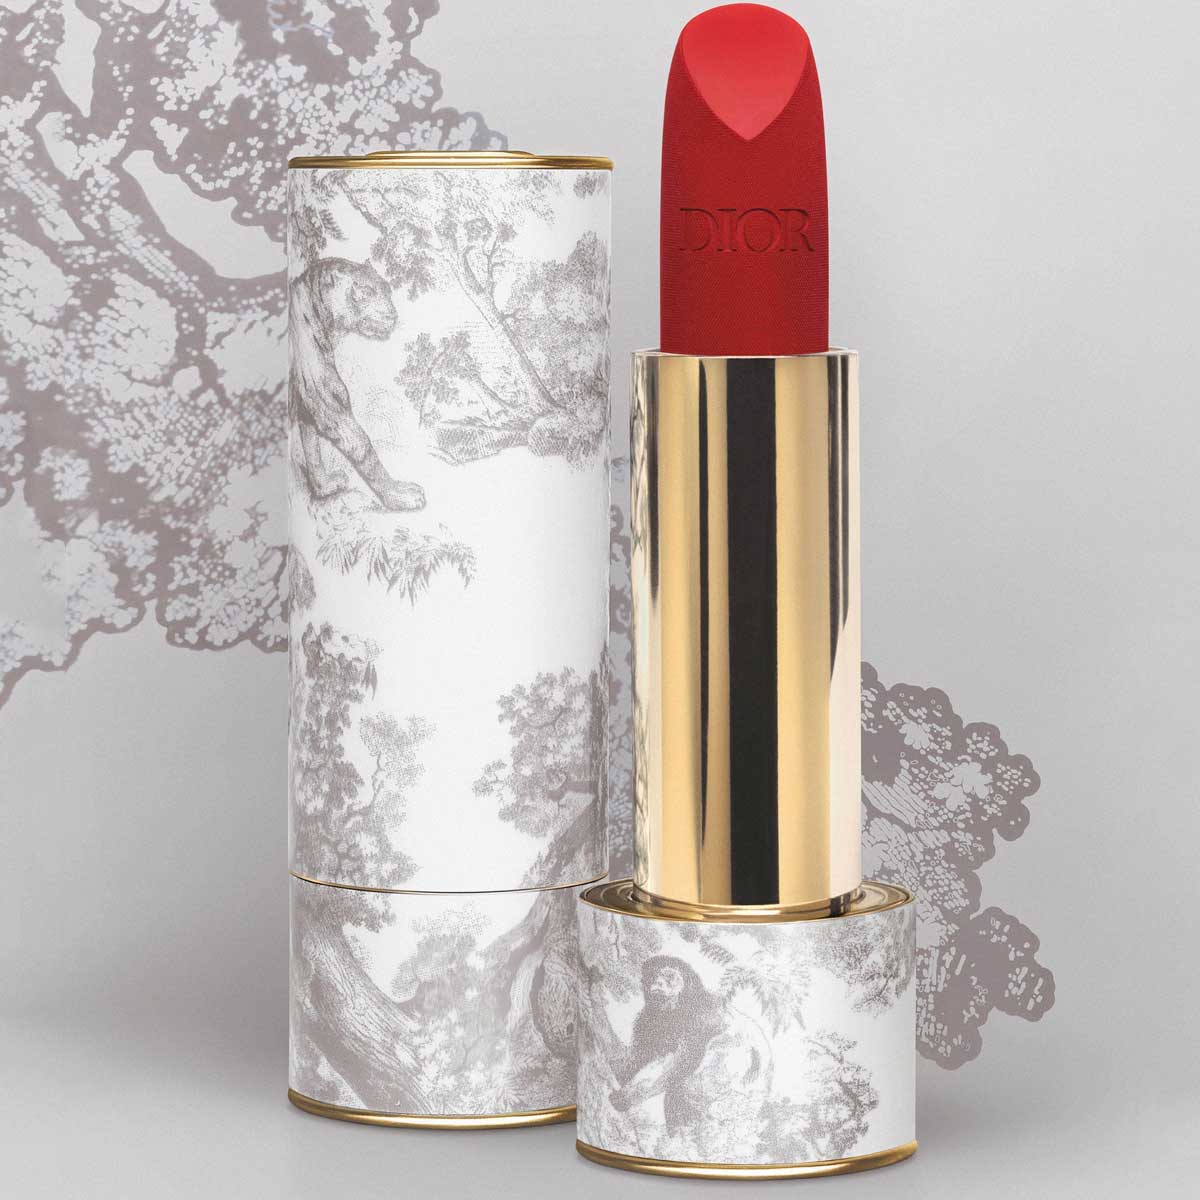 Dior Rouge Premier rossetto da collezione